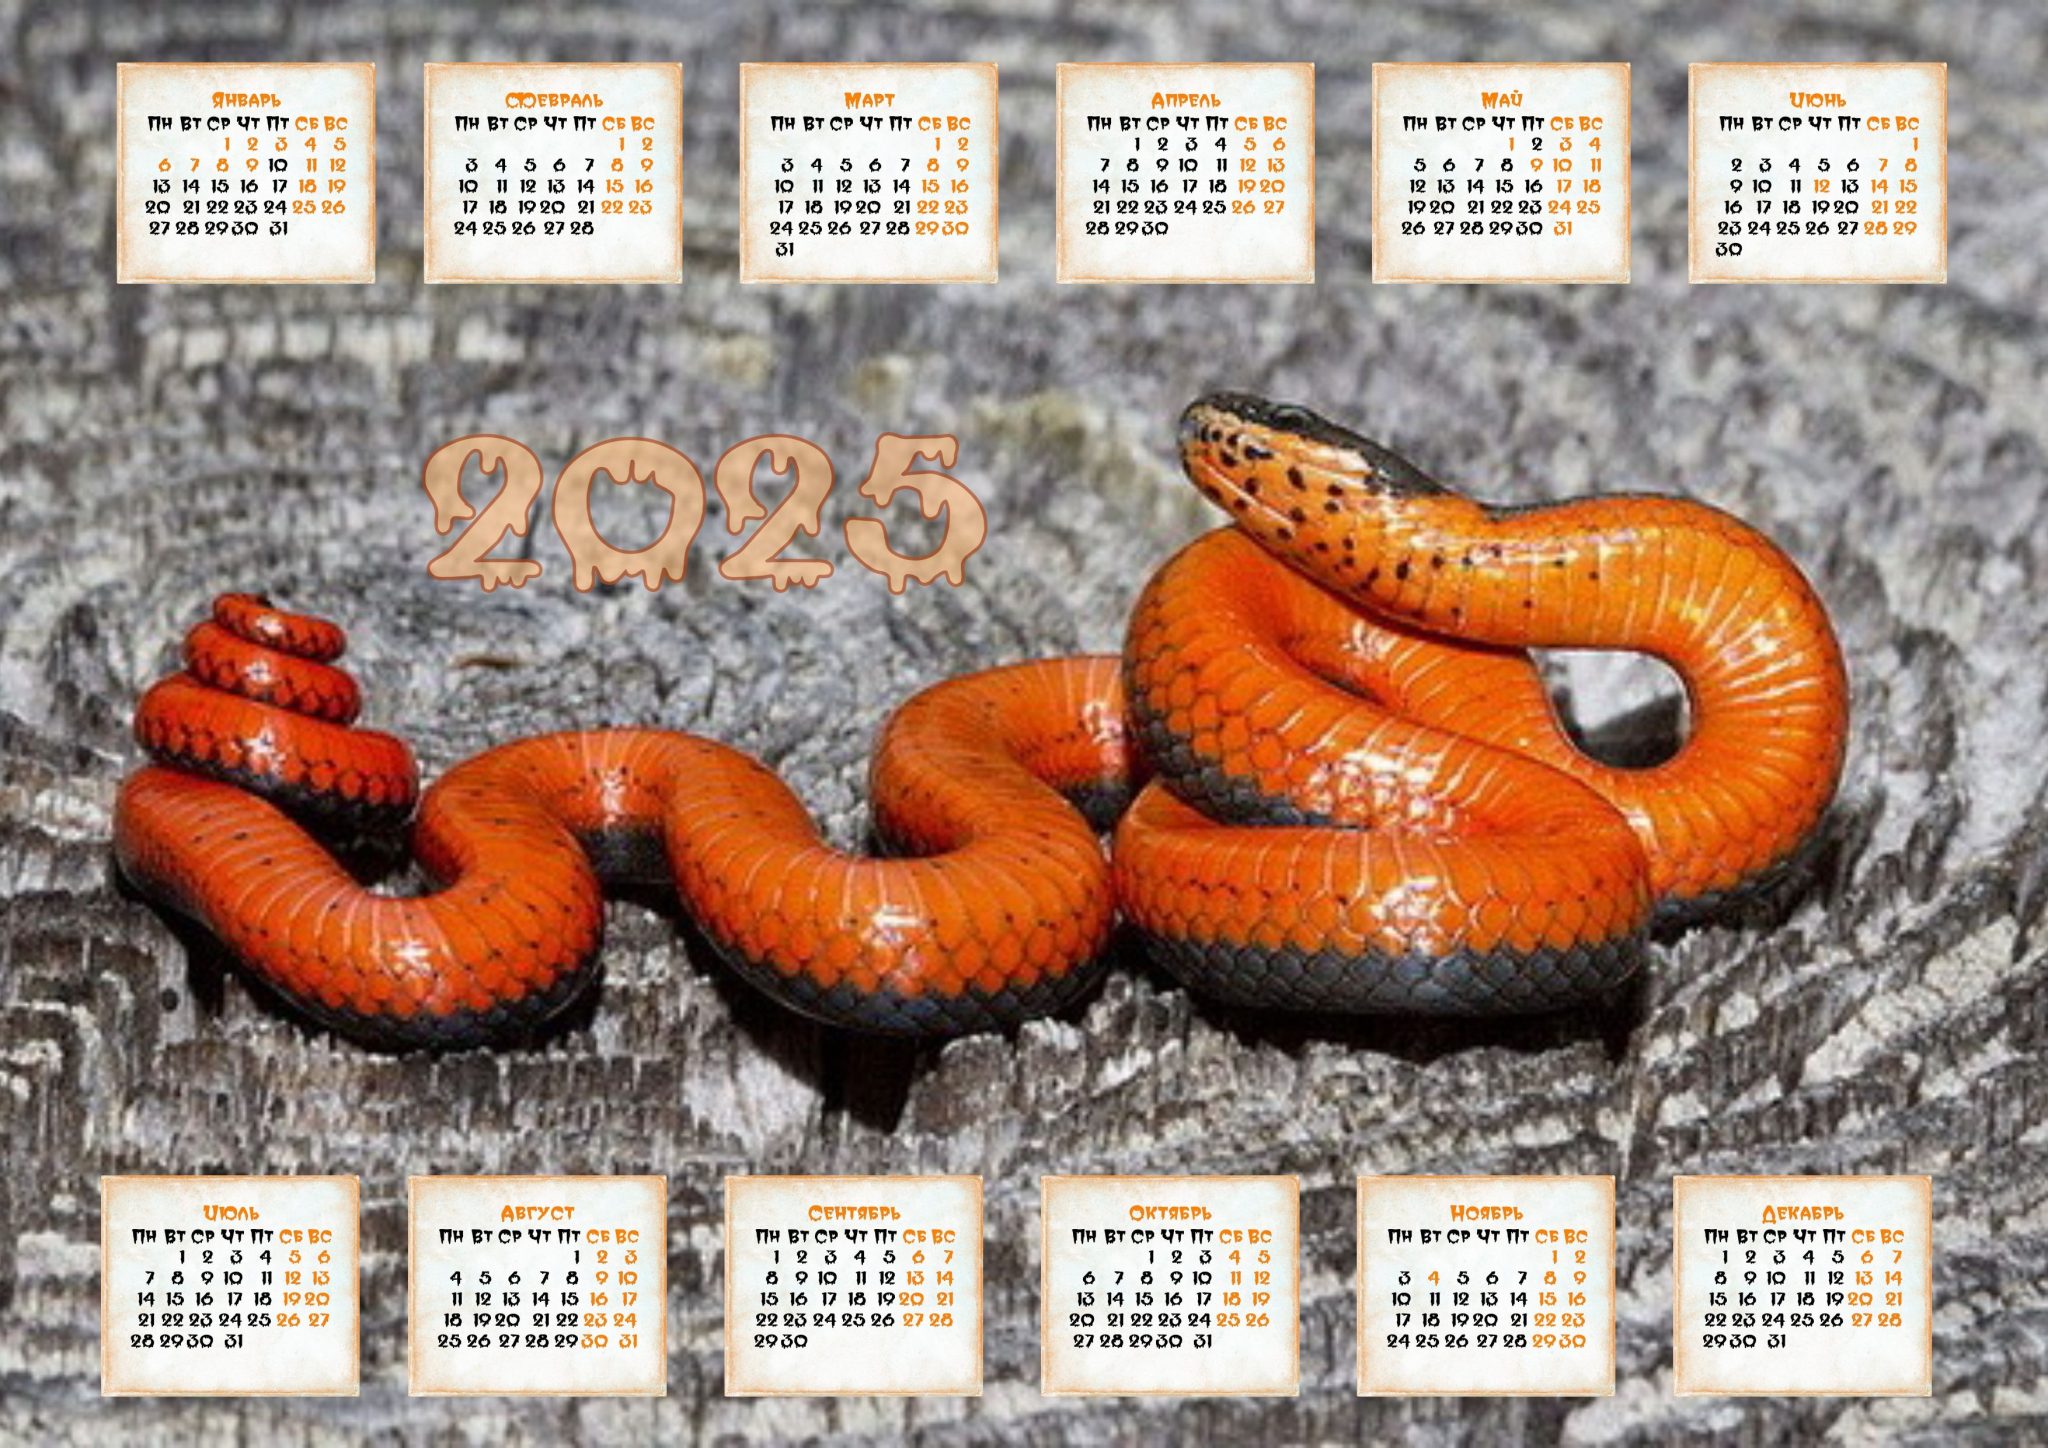 Календари со Змеёй на 2025 год